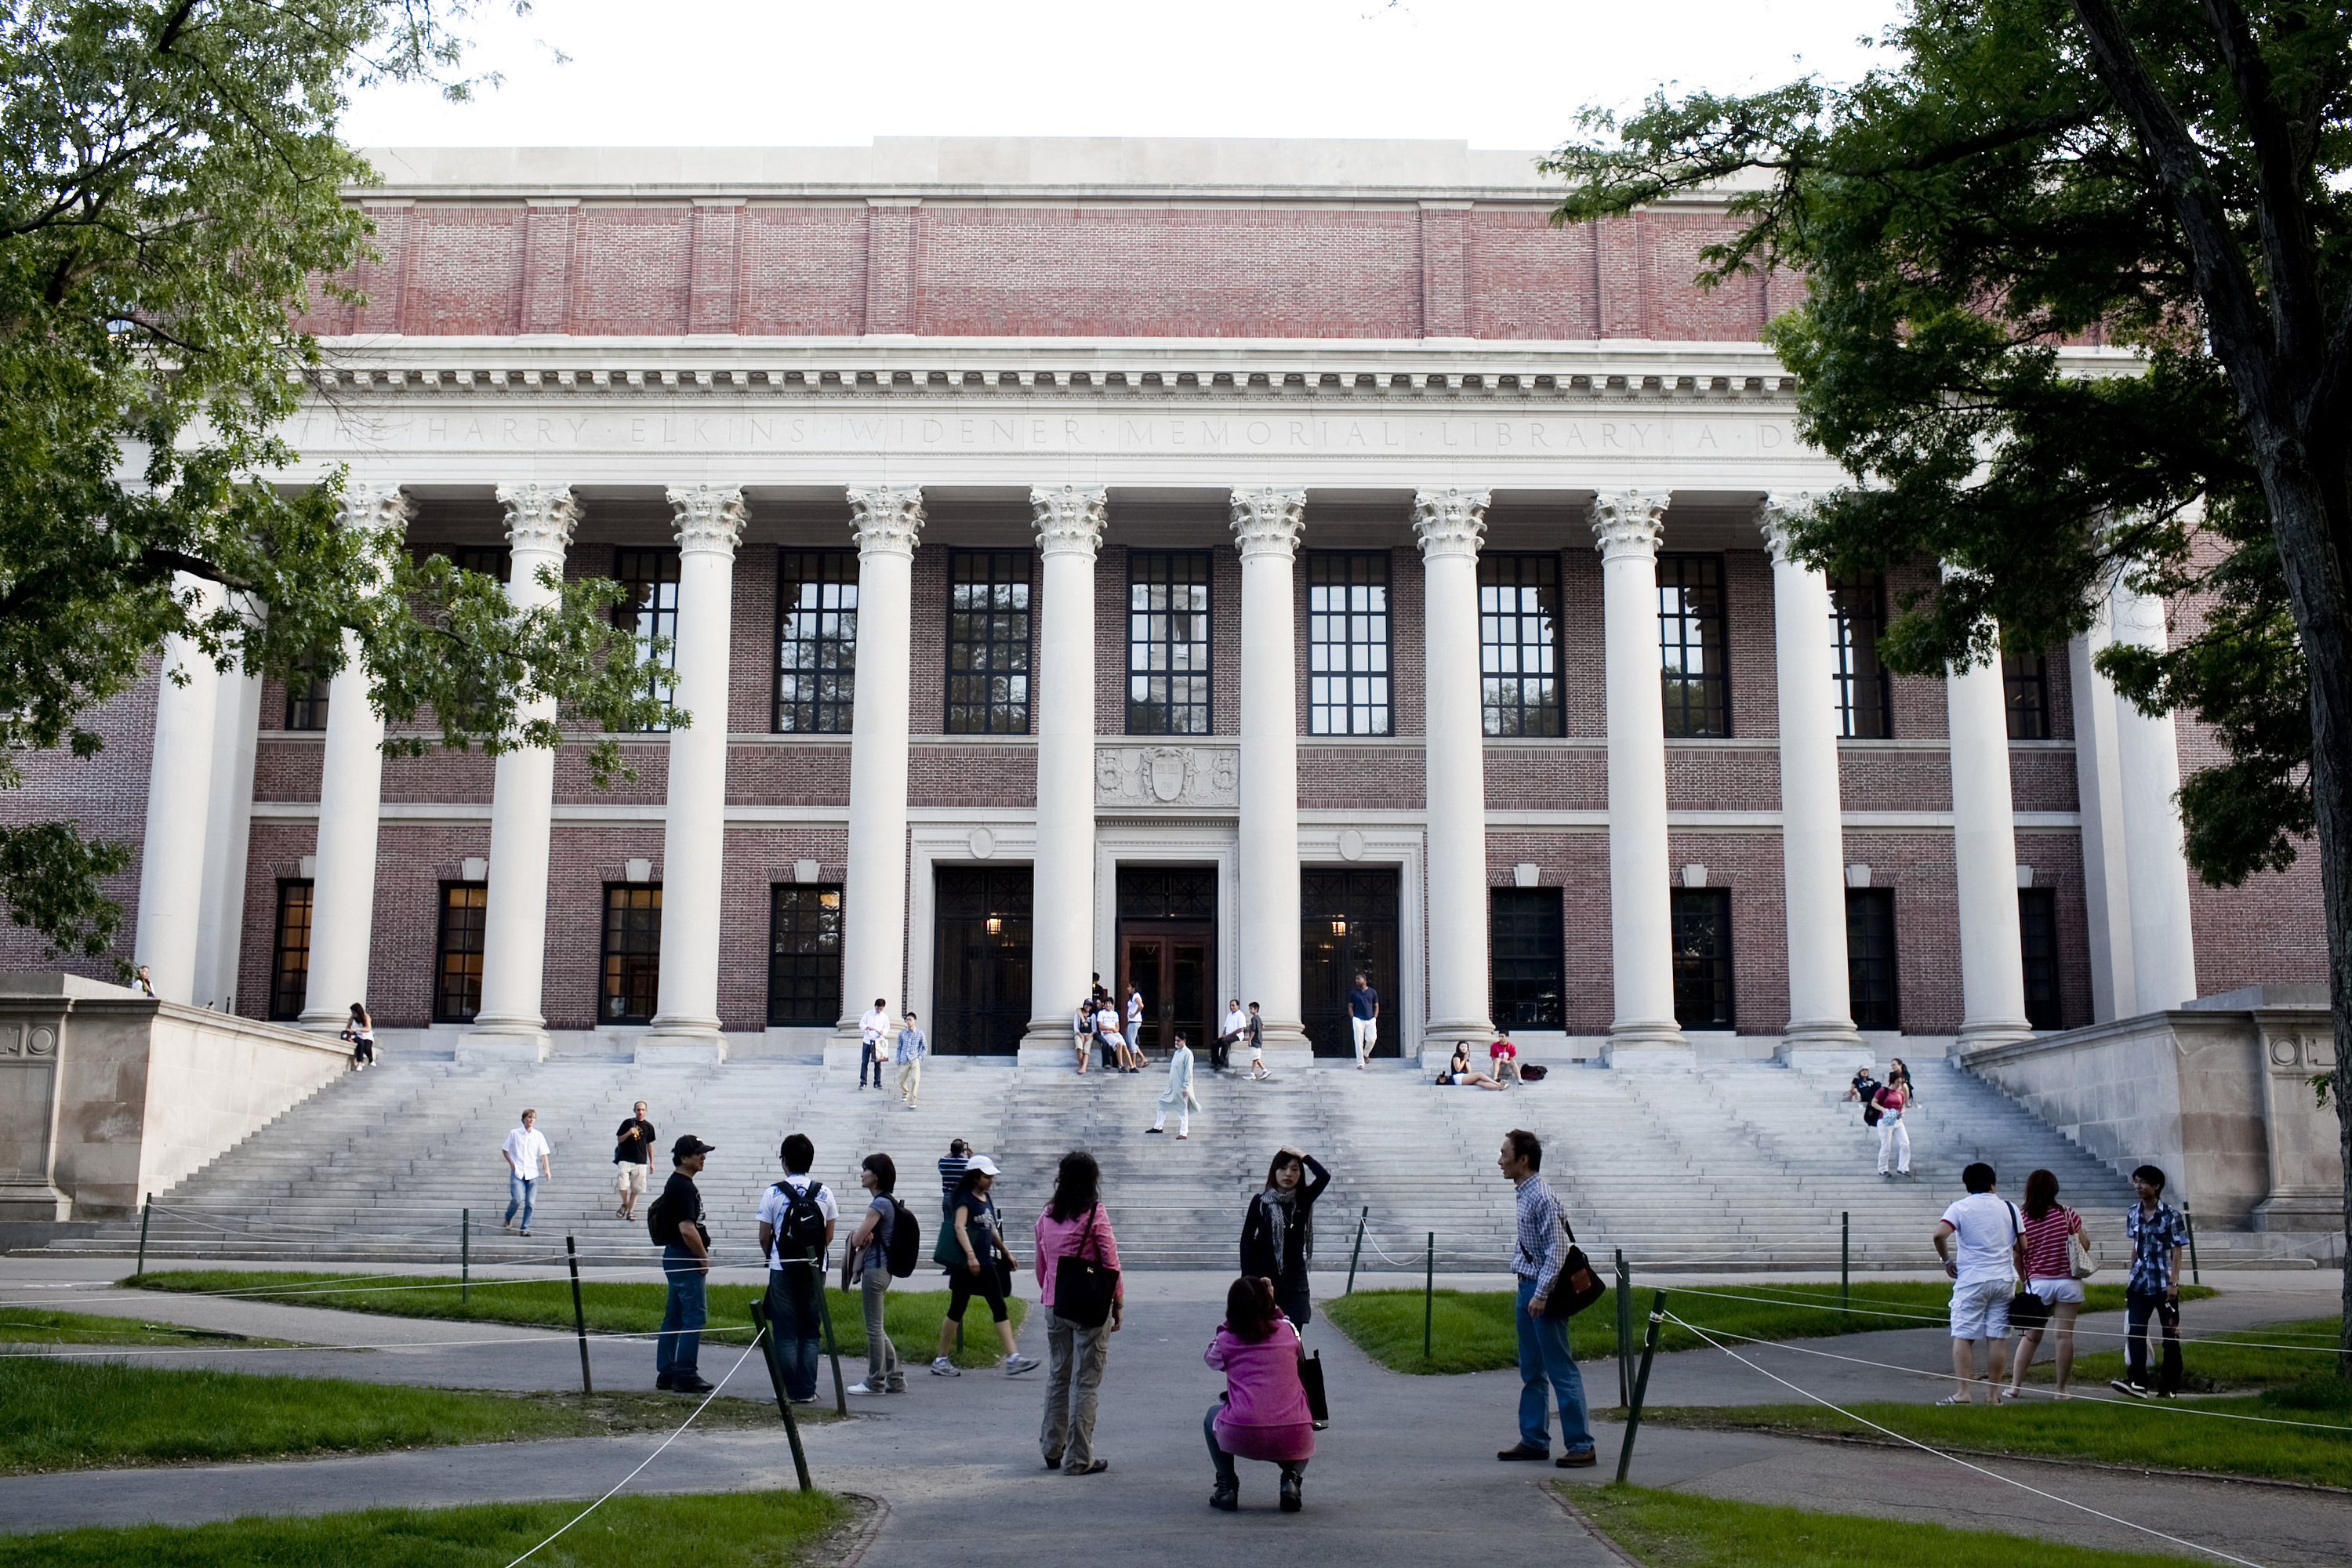 The Harry Elkins Widener library on the campus of Harvard University in Cambridge, Massachusetts, June 21, 2011.